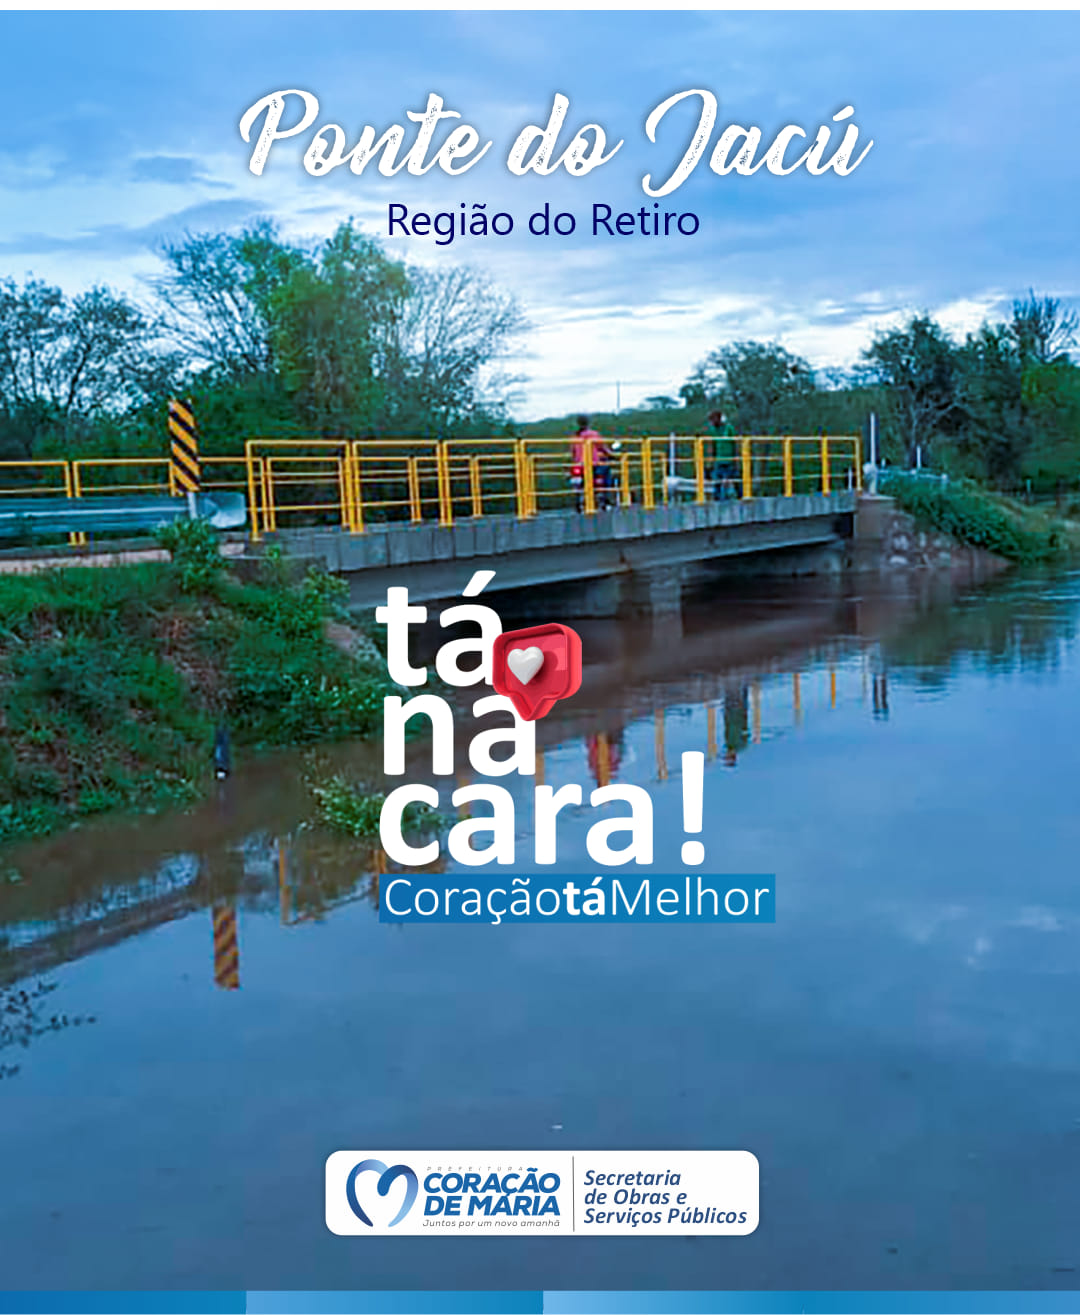 Nova Ponte do Jacú, na região do Retiro. Tá na cara, Coração tá melhor!